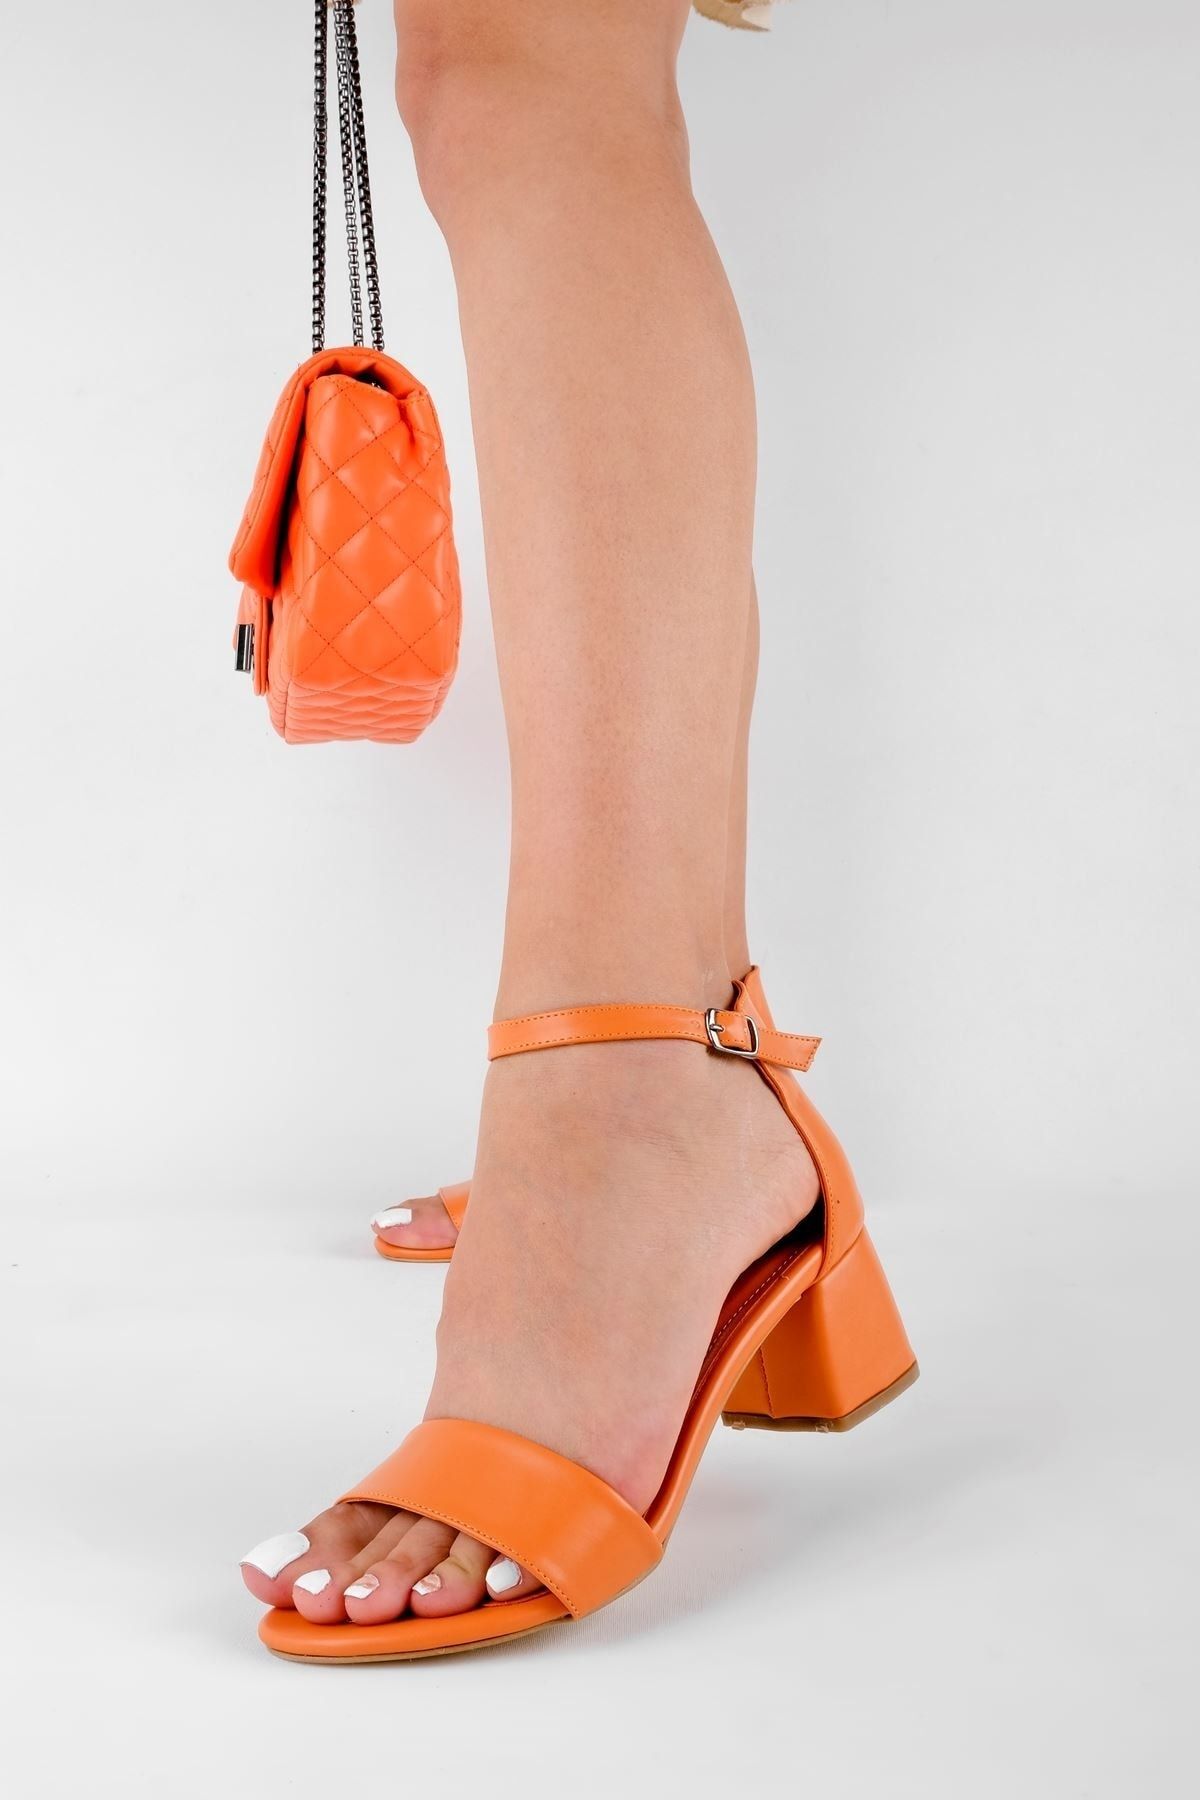 LAL SHOES & BAGS Thayer Kadın Topuklu Ayakkabı Tek Bant-turuncu